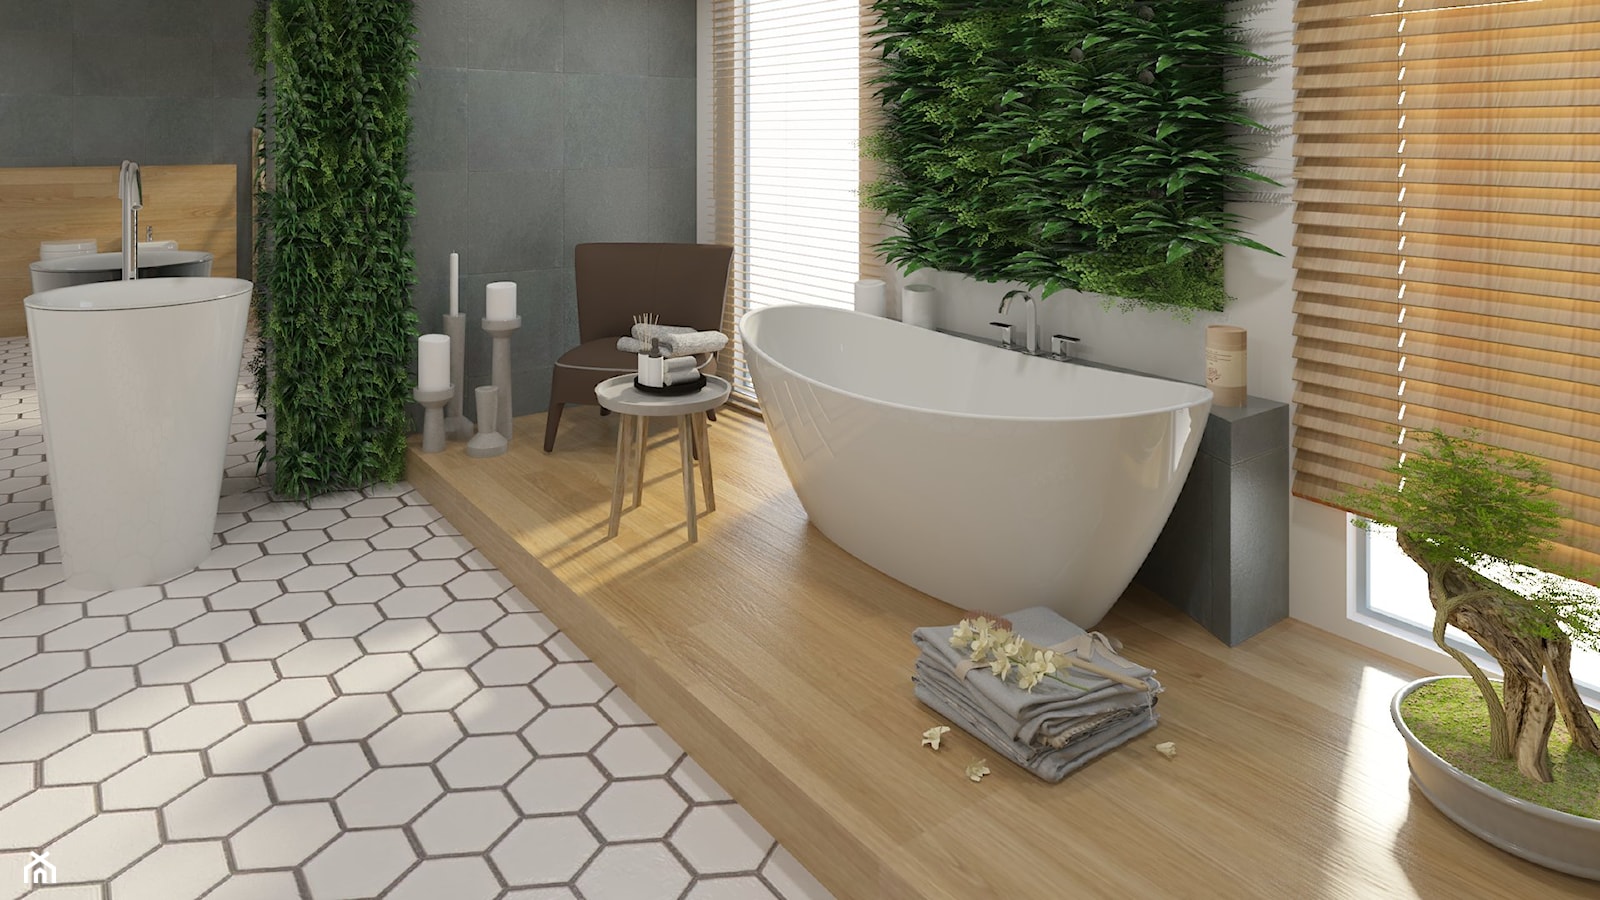 Łazienka - Duża jako pokój kąpielowy łazienka z oknem - zdjęcie od Cubic concept - Homebook